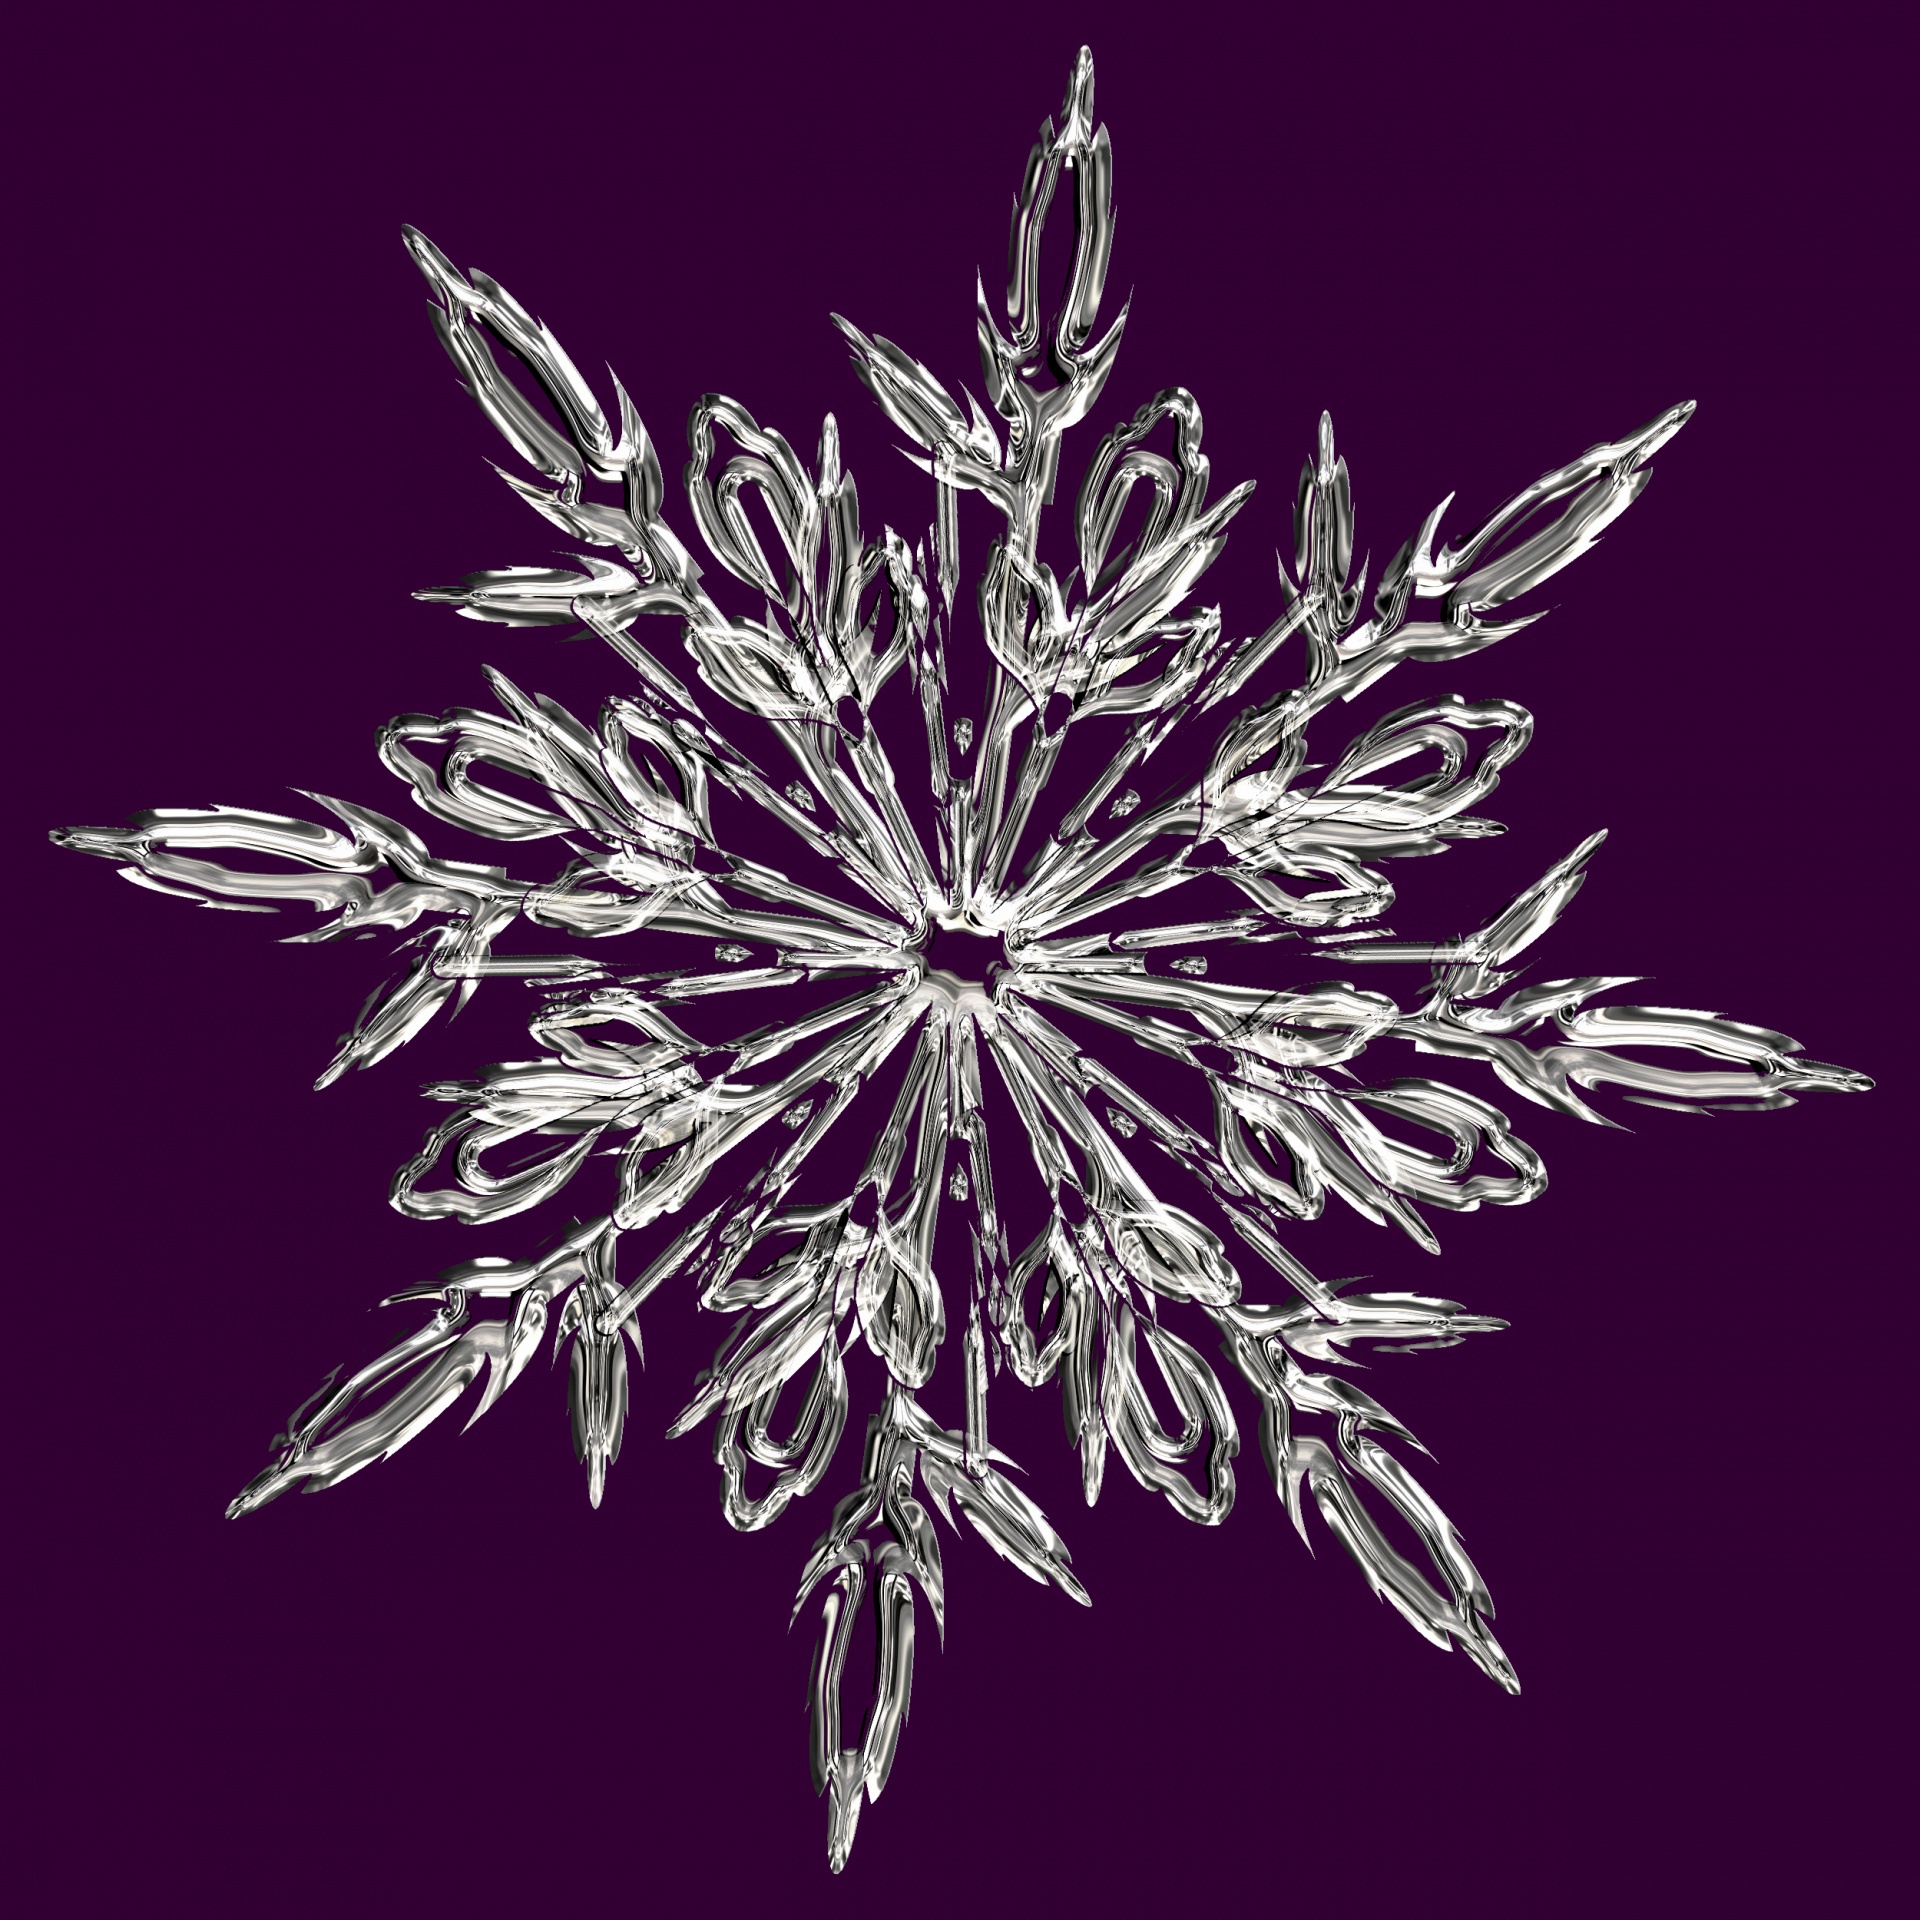 Floco de neve de cristal roxo